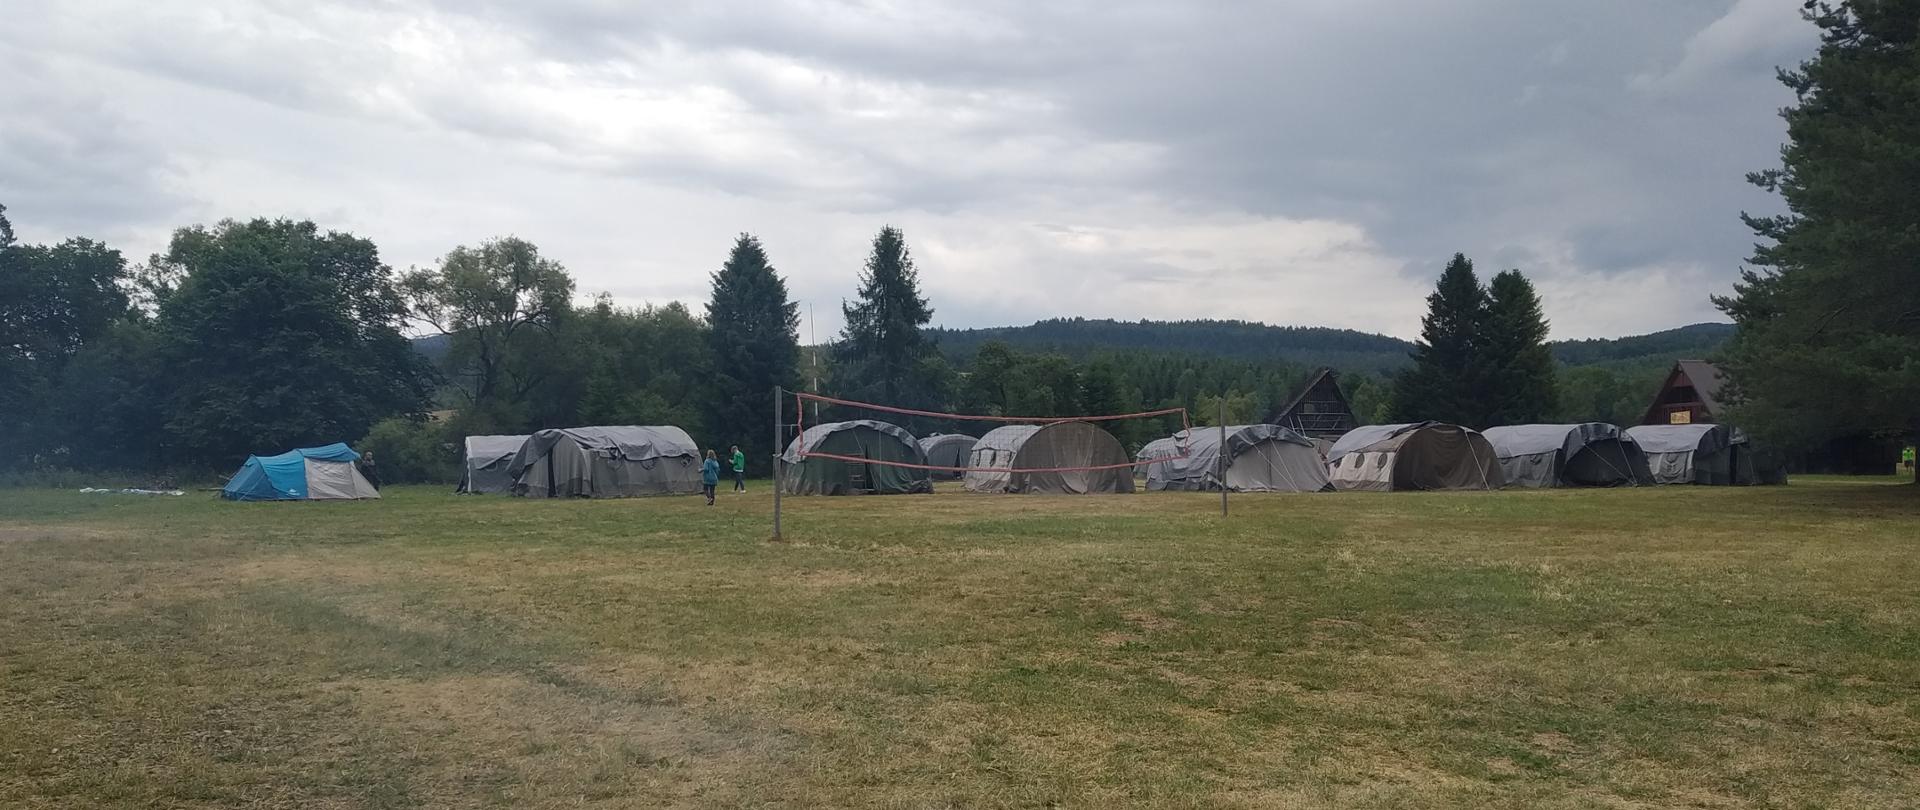 Zdjęcie przedstawia namioty zlokalizowane na łące. W tle domki wypoczynkowe oraz las. Na pierwszym planie boisko do siatkówki.